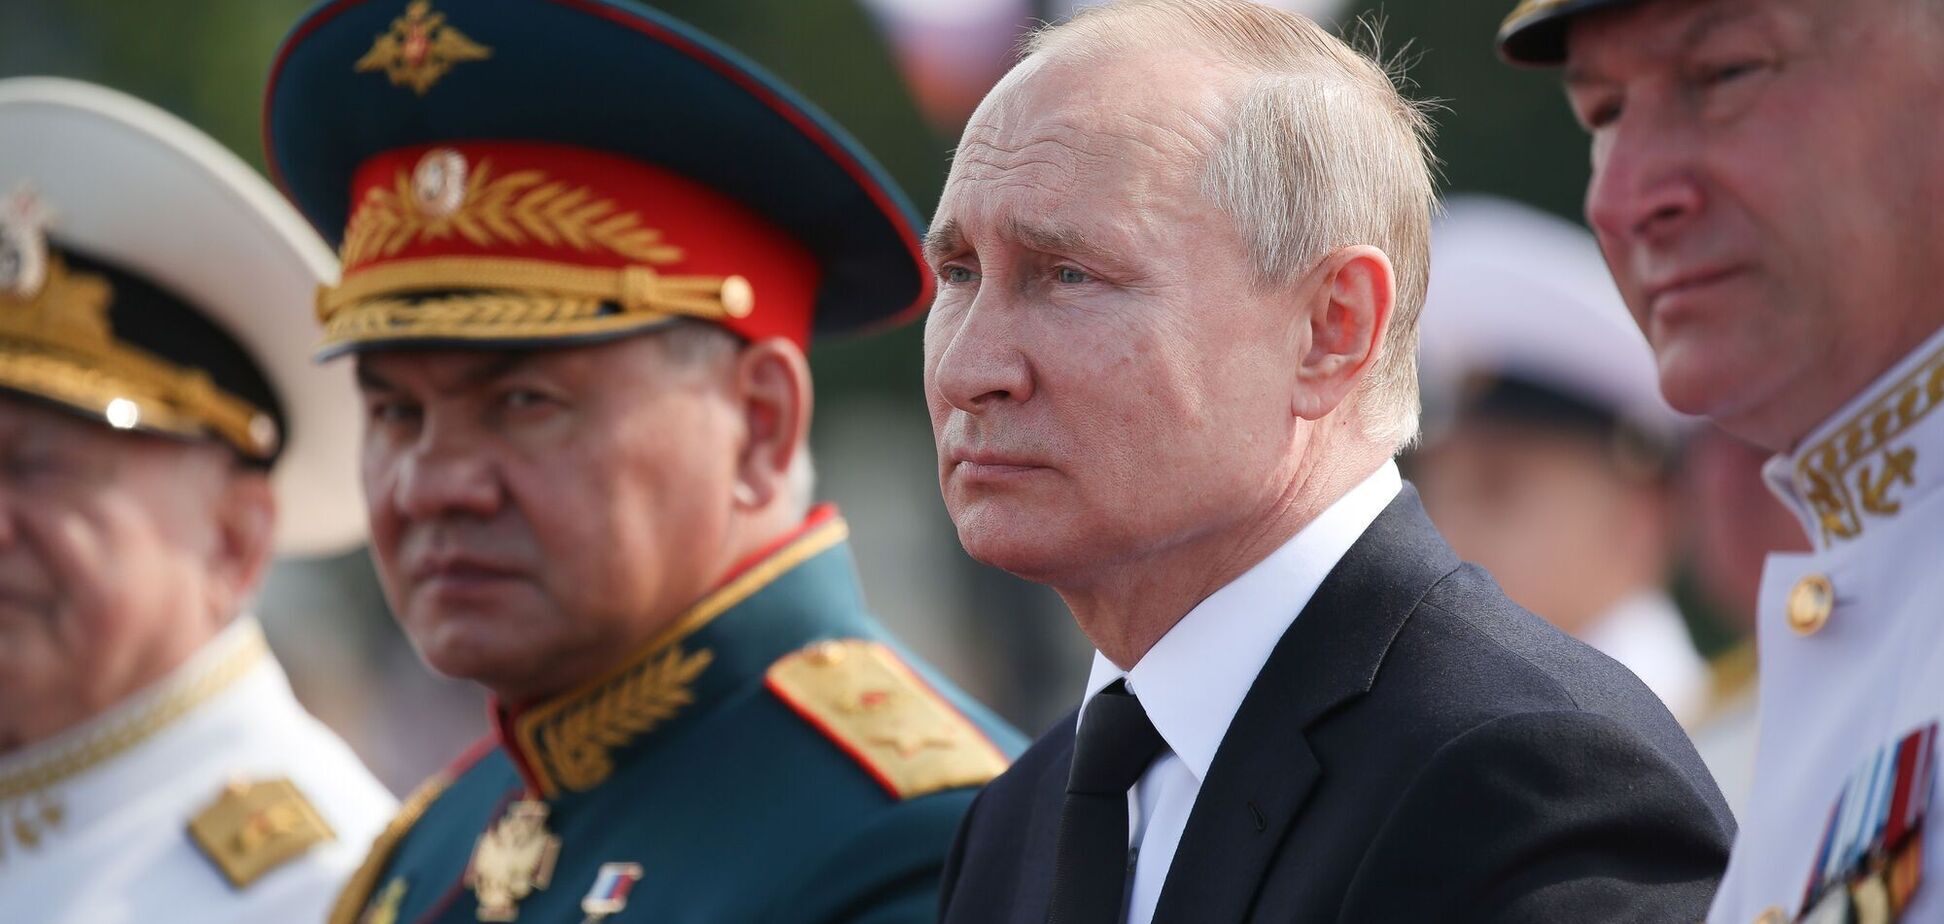 Ще один крок до держперевороту: в Росії заговорили про перестановки у силовому блоці та назвали трьох фаворитів Путіна